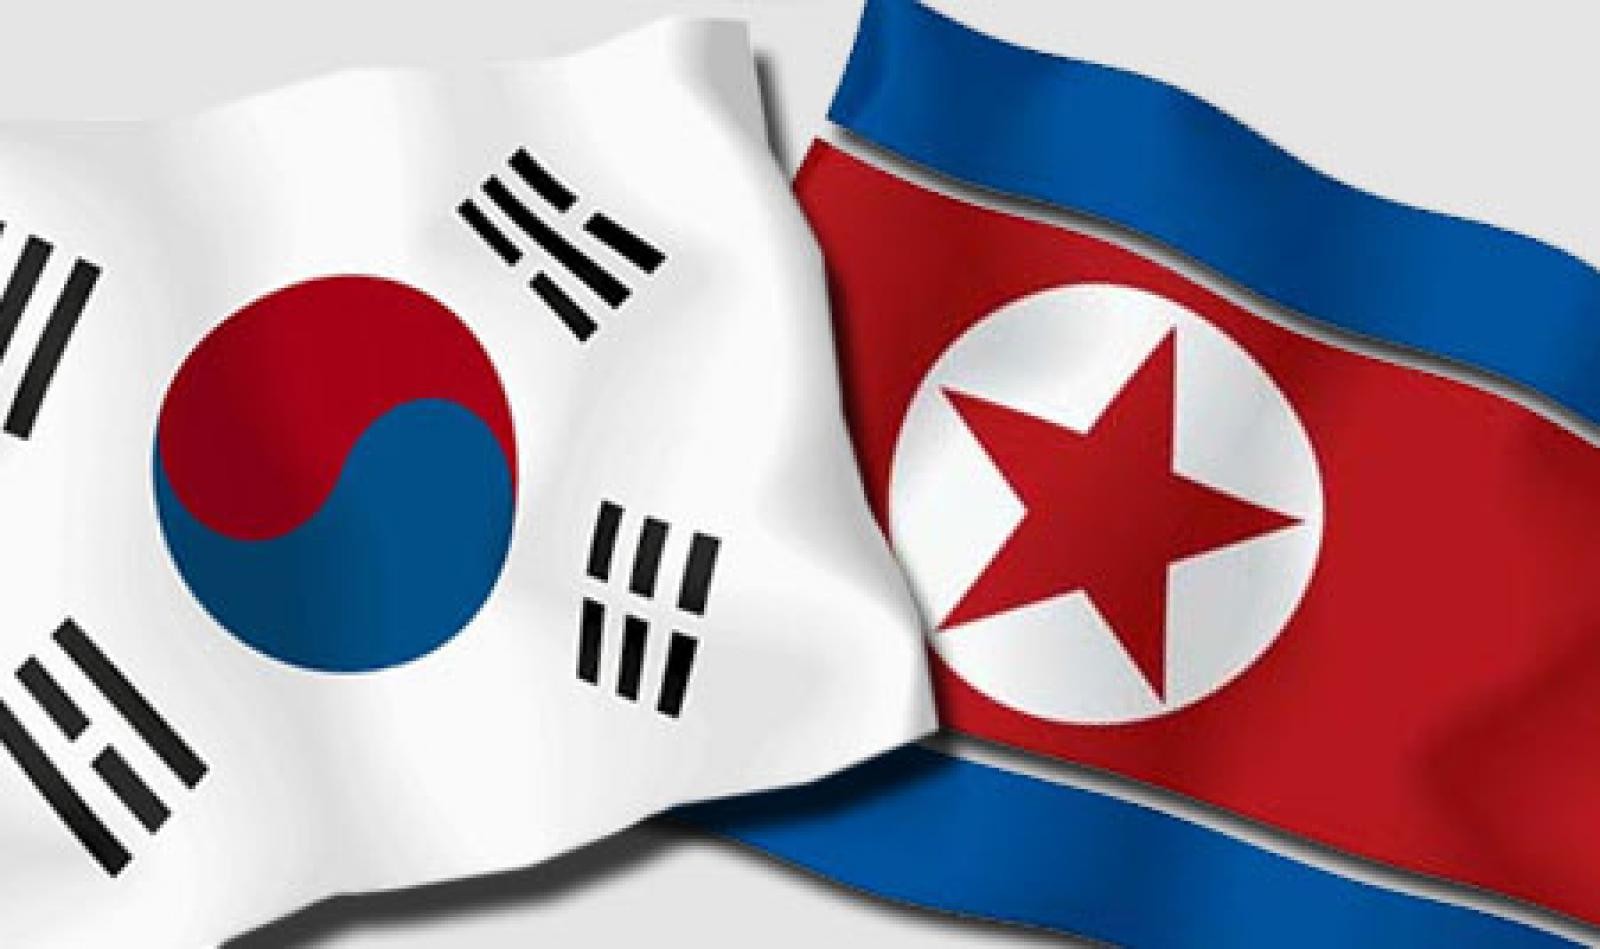 северная и южная корея сравнение